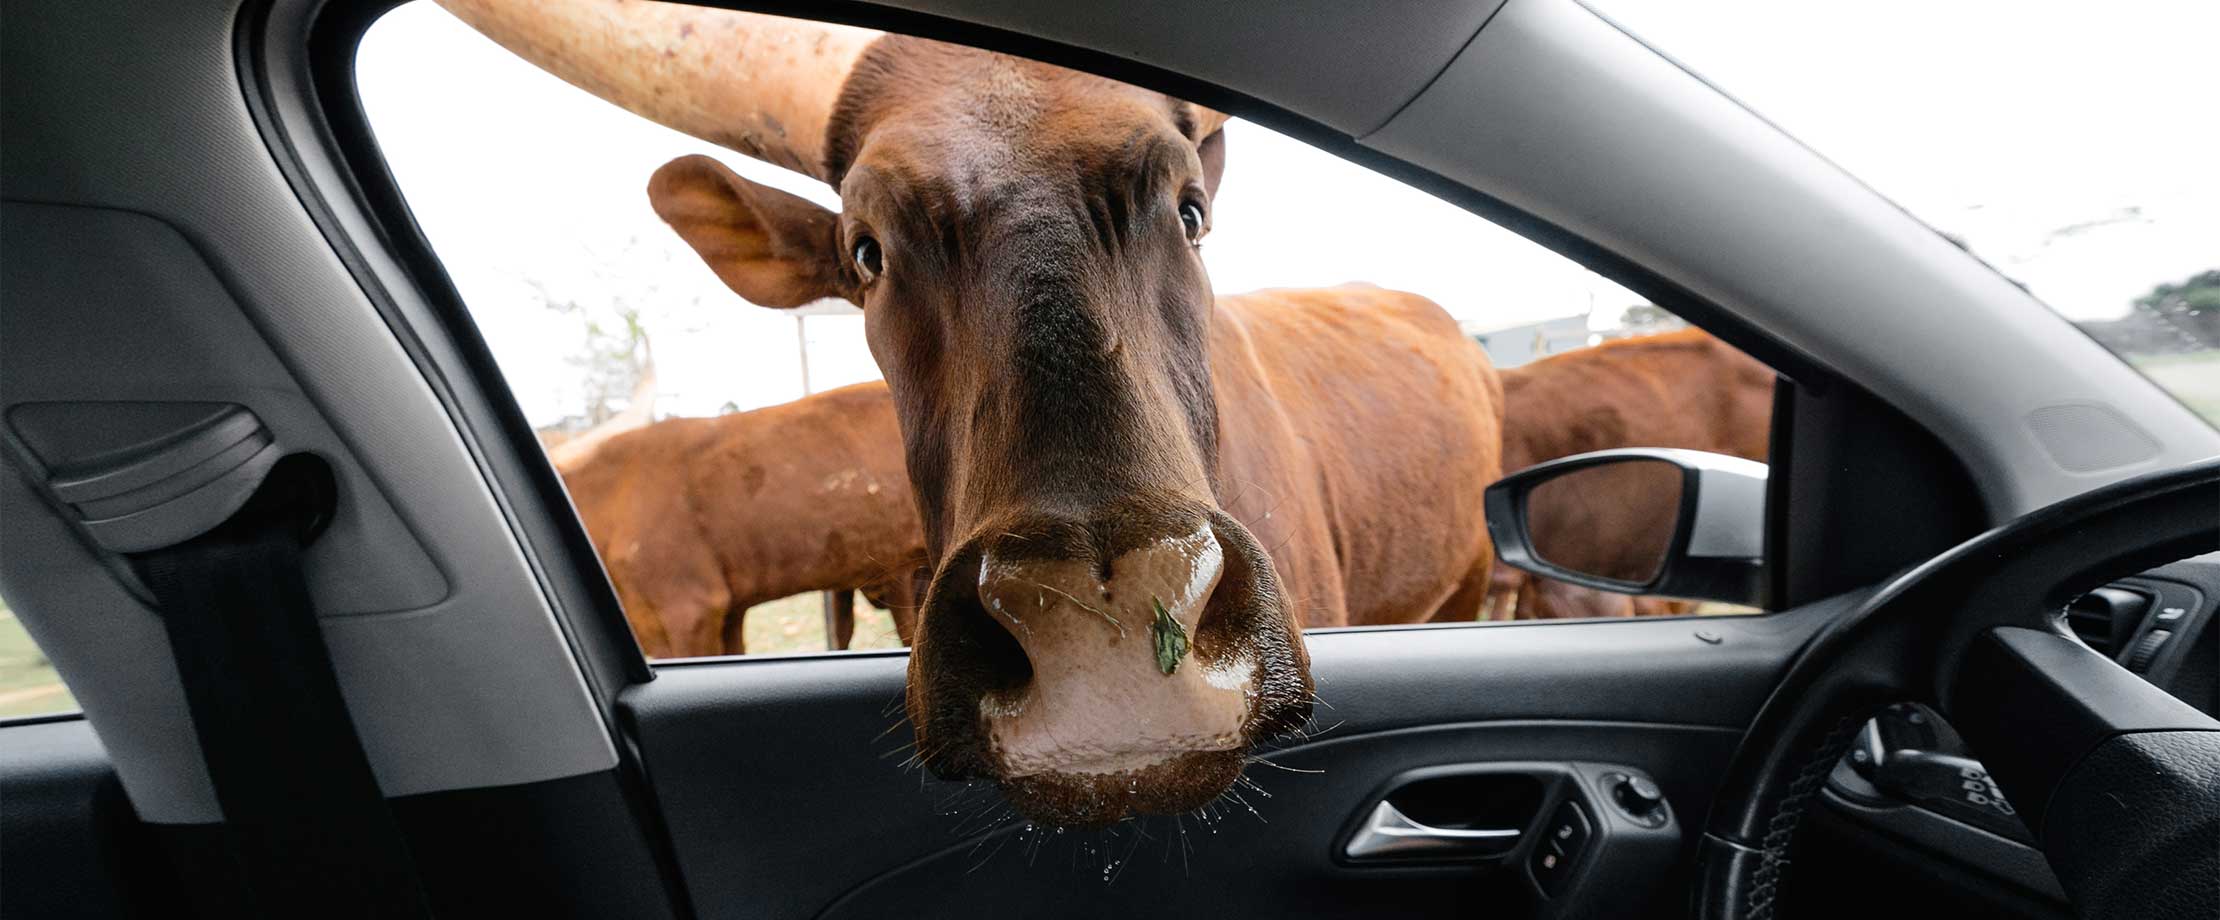 Eine braune Kuh hält den Kopf durch das Beifahrerfenster eines Autos und blickt in die Kamera. Im Hintergrund sieht man noch weitere Kühe.